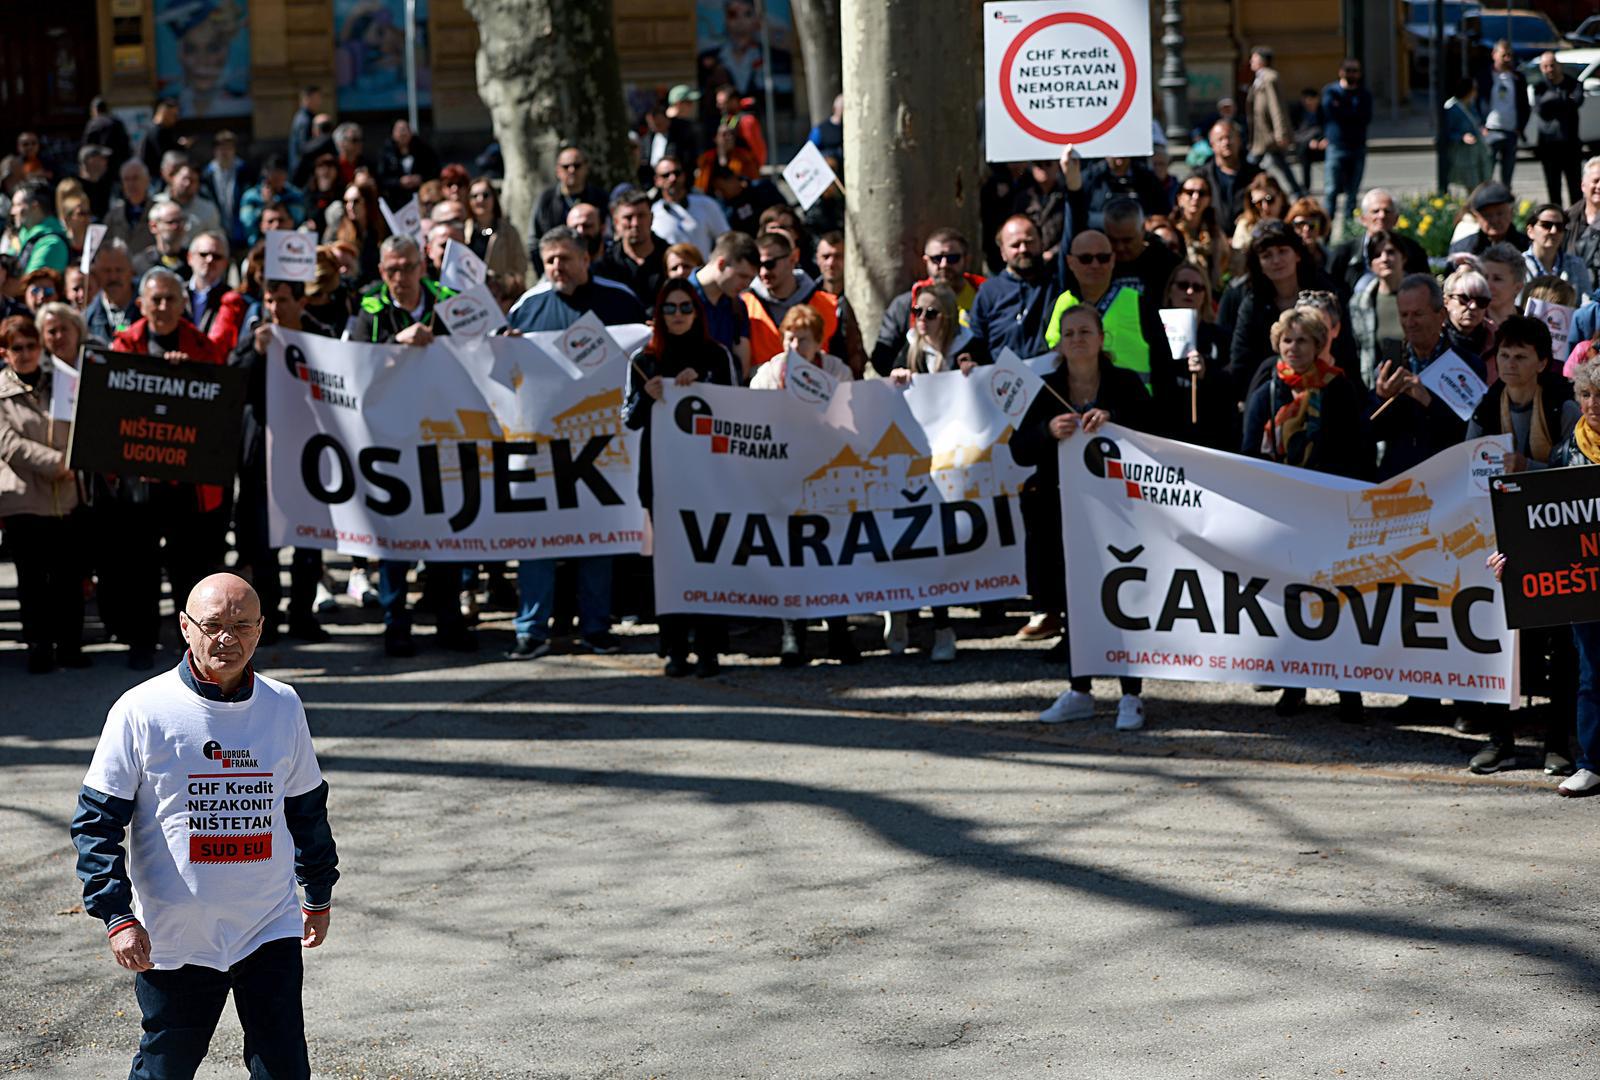 01.04.21023., Zagreb - U parku Zrinjevac organiziran prosvjed Udruge franak pod nazivom "Vrijeme je!". Goran Aleksic Photo: Sanjin Strukic/PIXSELL